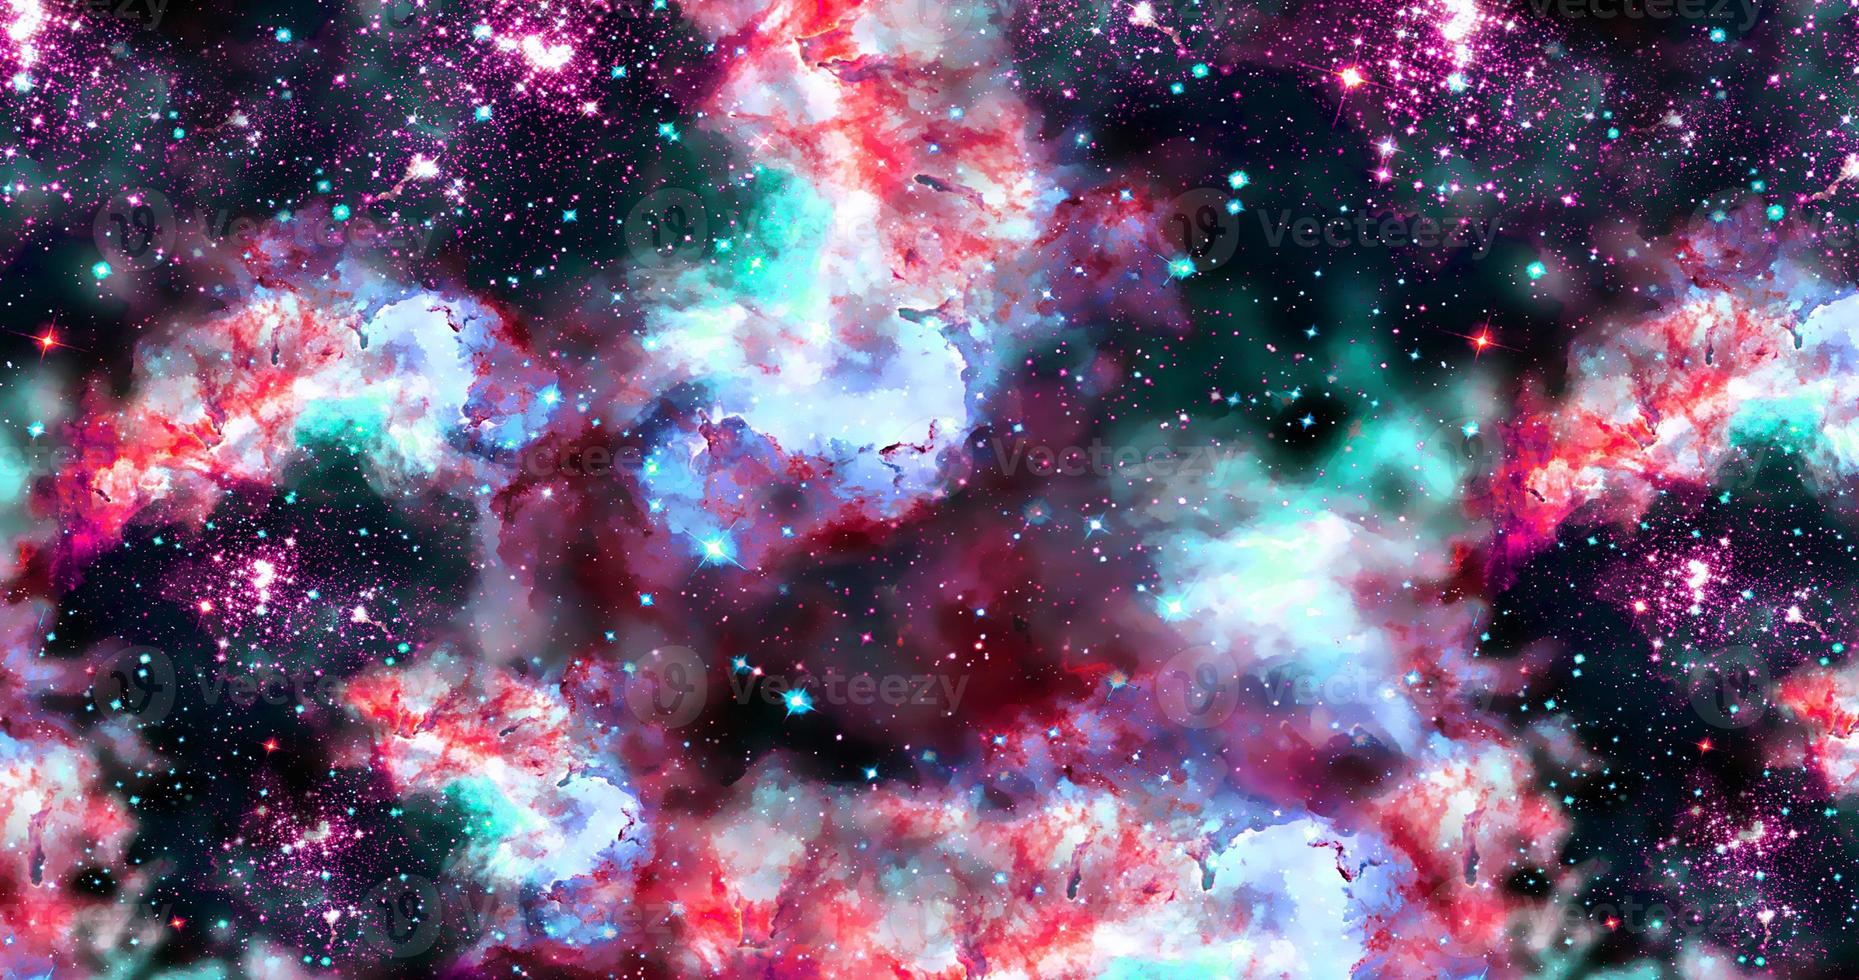 fond de galaxie abstrait avec des étoiles et des planètes avec des motifs colorés uniques de l'espace de lumière nocturne de l'univers photo